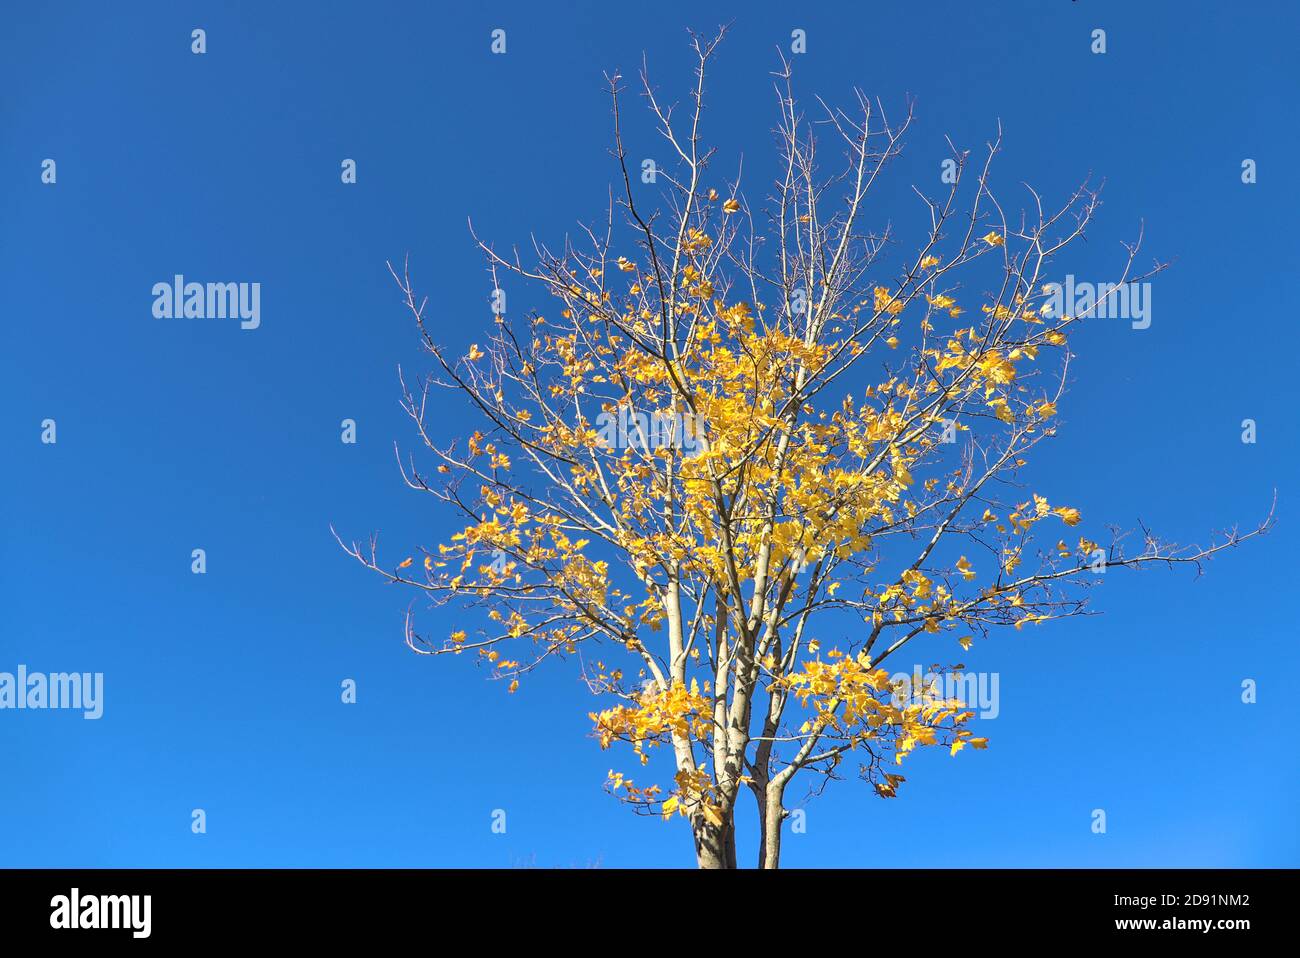 Magnifique érable d'automne avec des feuilles jaunes sur un ciel bleu clair absolument incroyable. Mise au point sélective, vue de dessous, espace de copie. Ballinteer, Dublin Banque D'Images